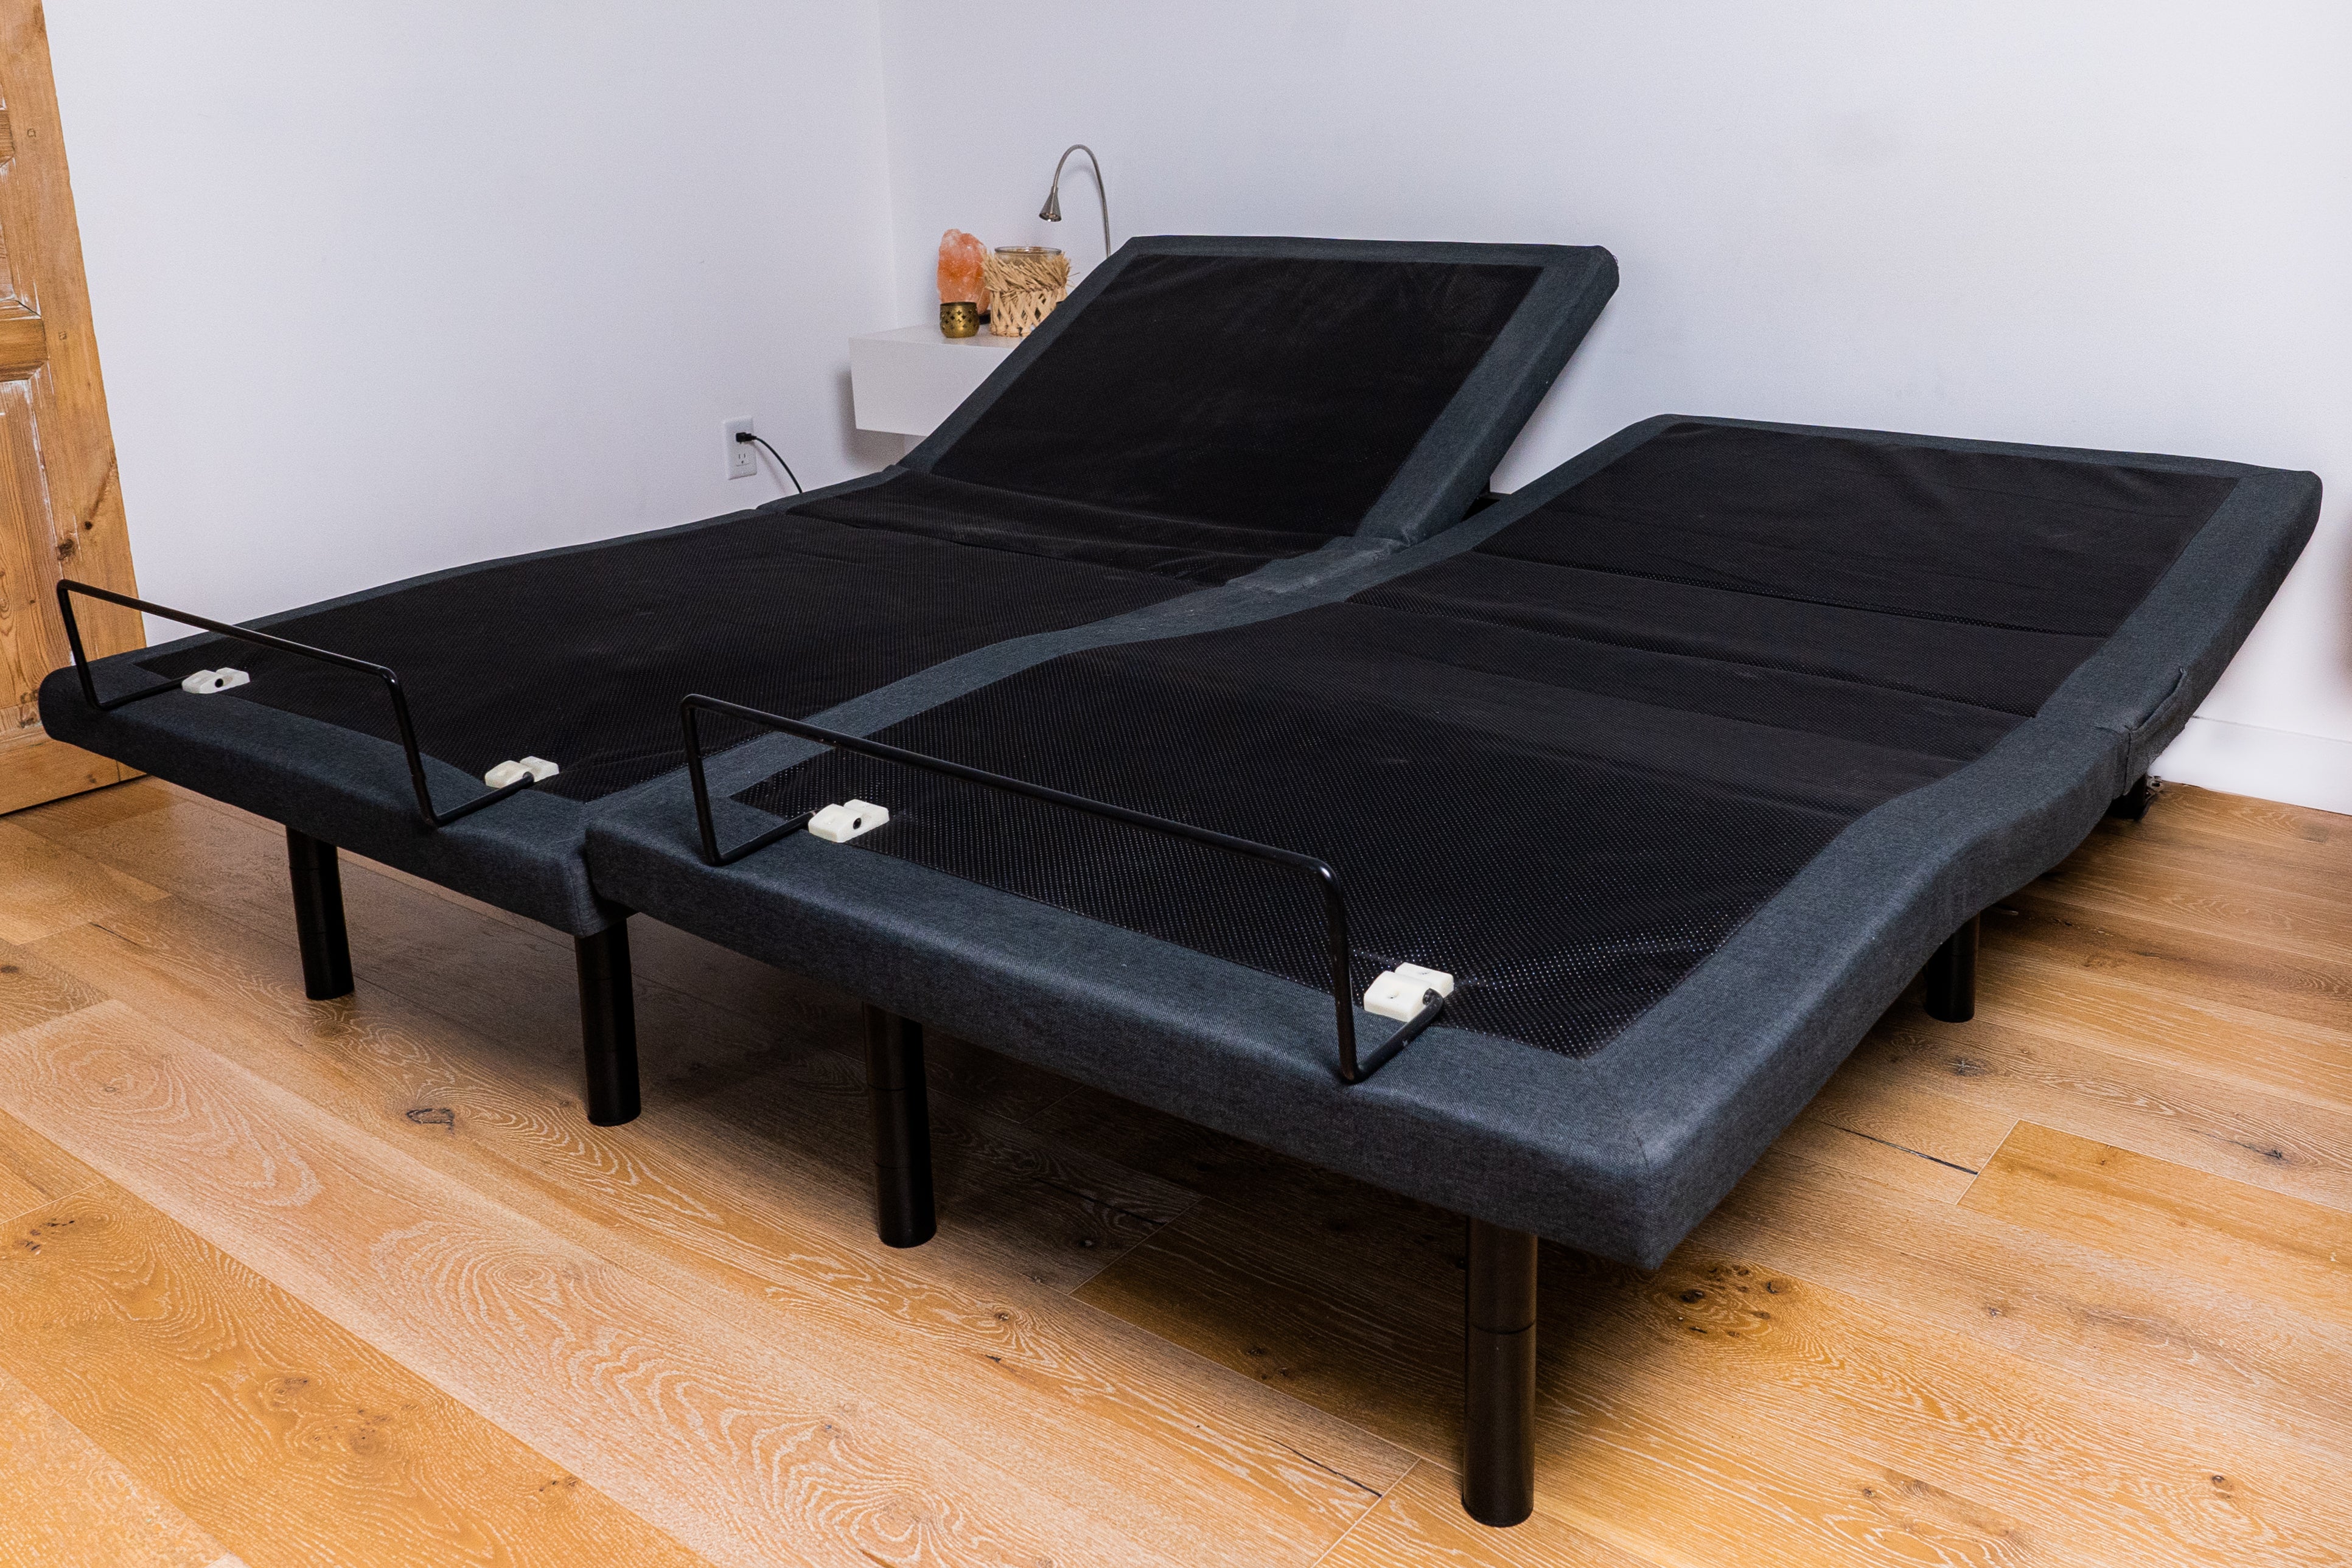 Elite 250 adjustable bed frame 